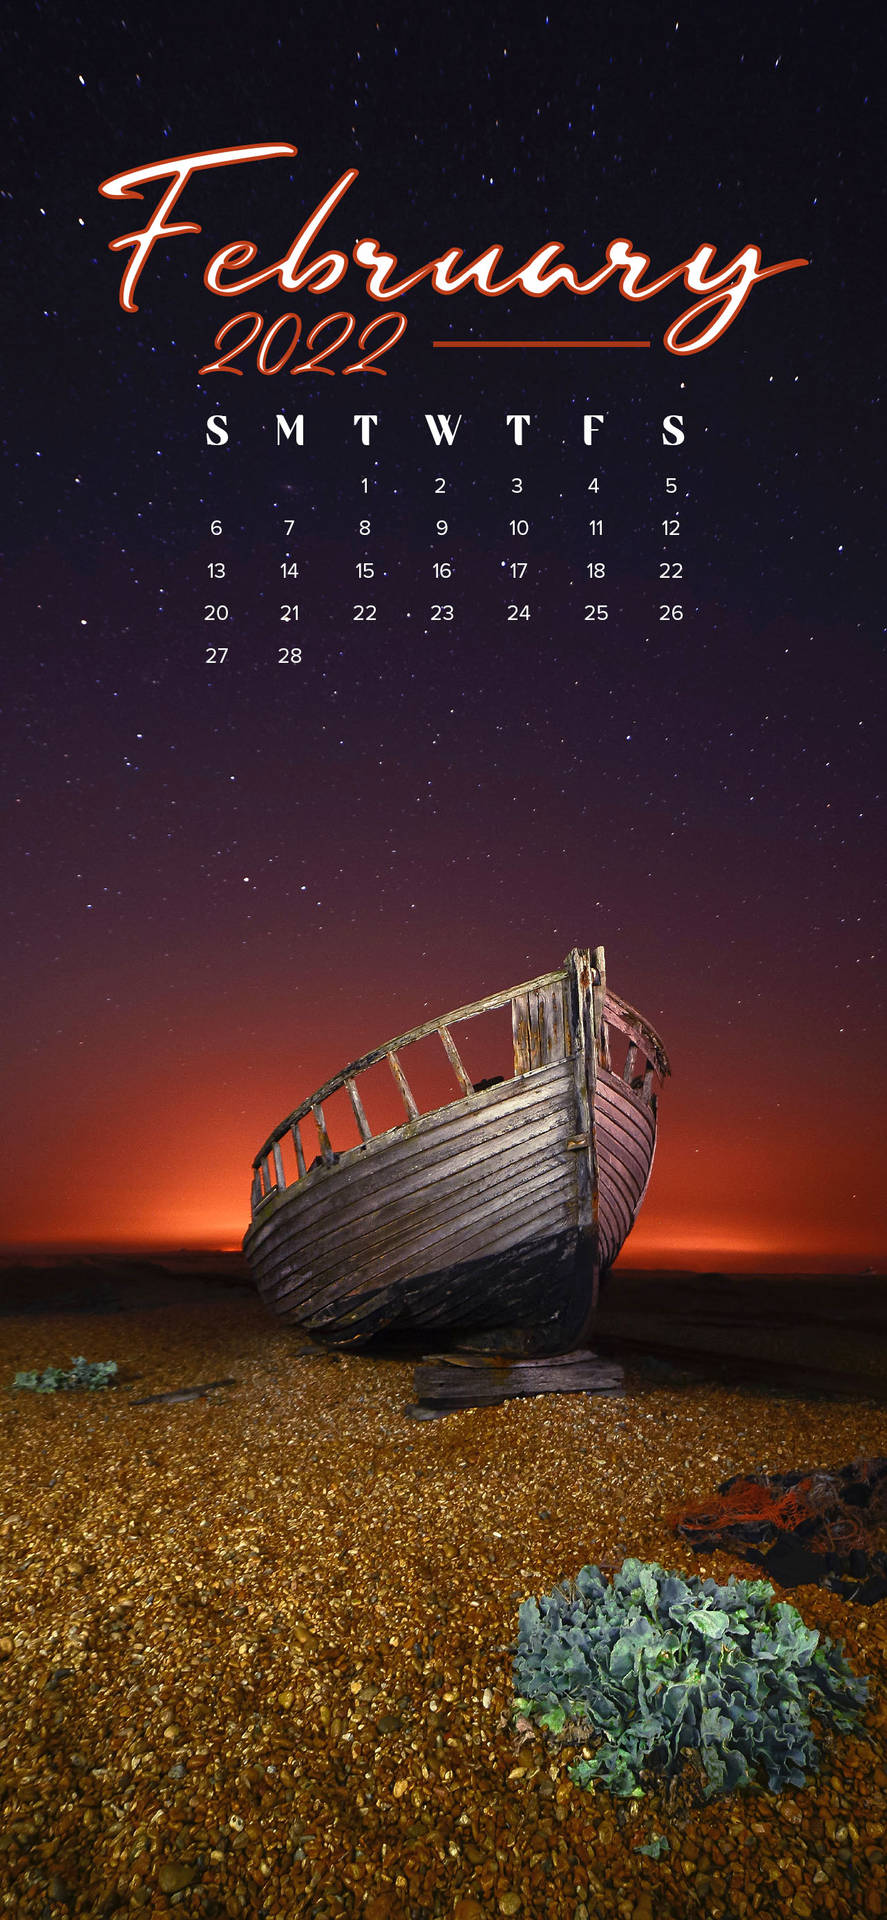 February 2022 Calendar In Beach Shore Background